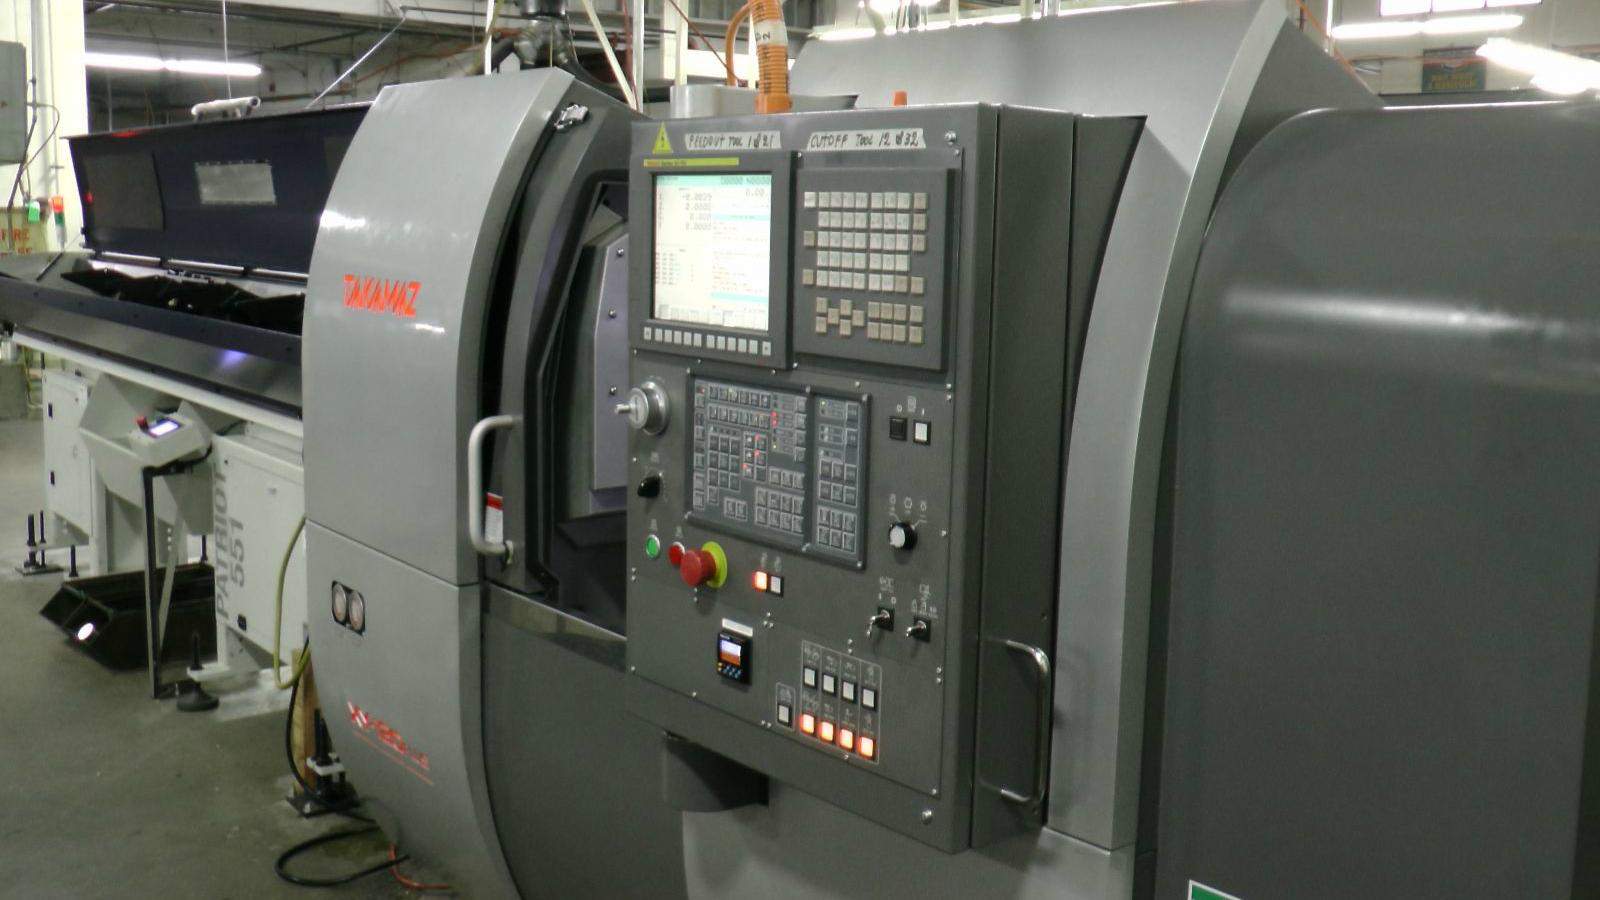 Takamaz production machines